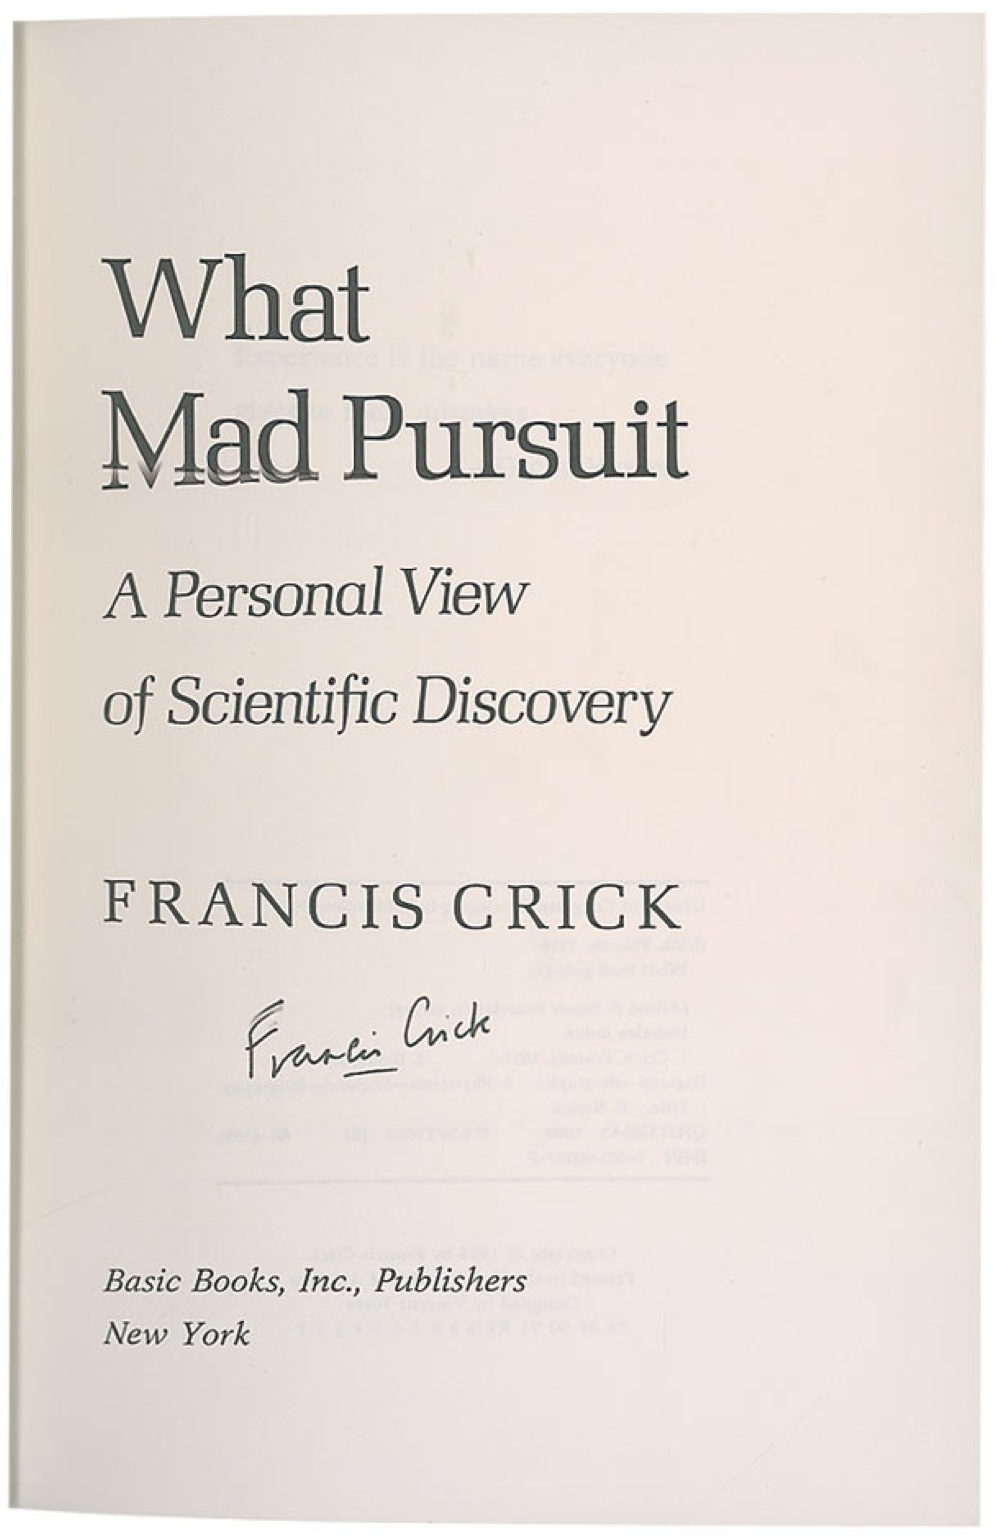 Lot #216 DNA: Francis Crick